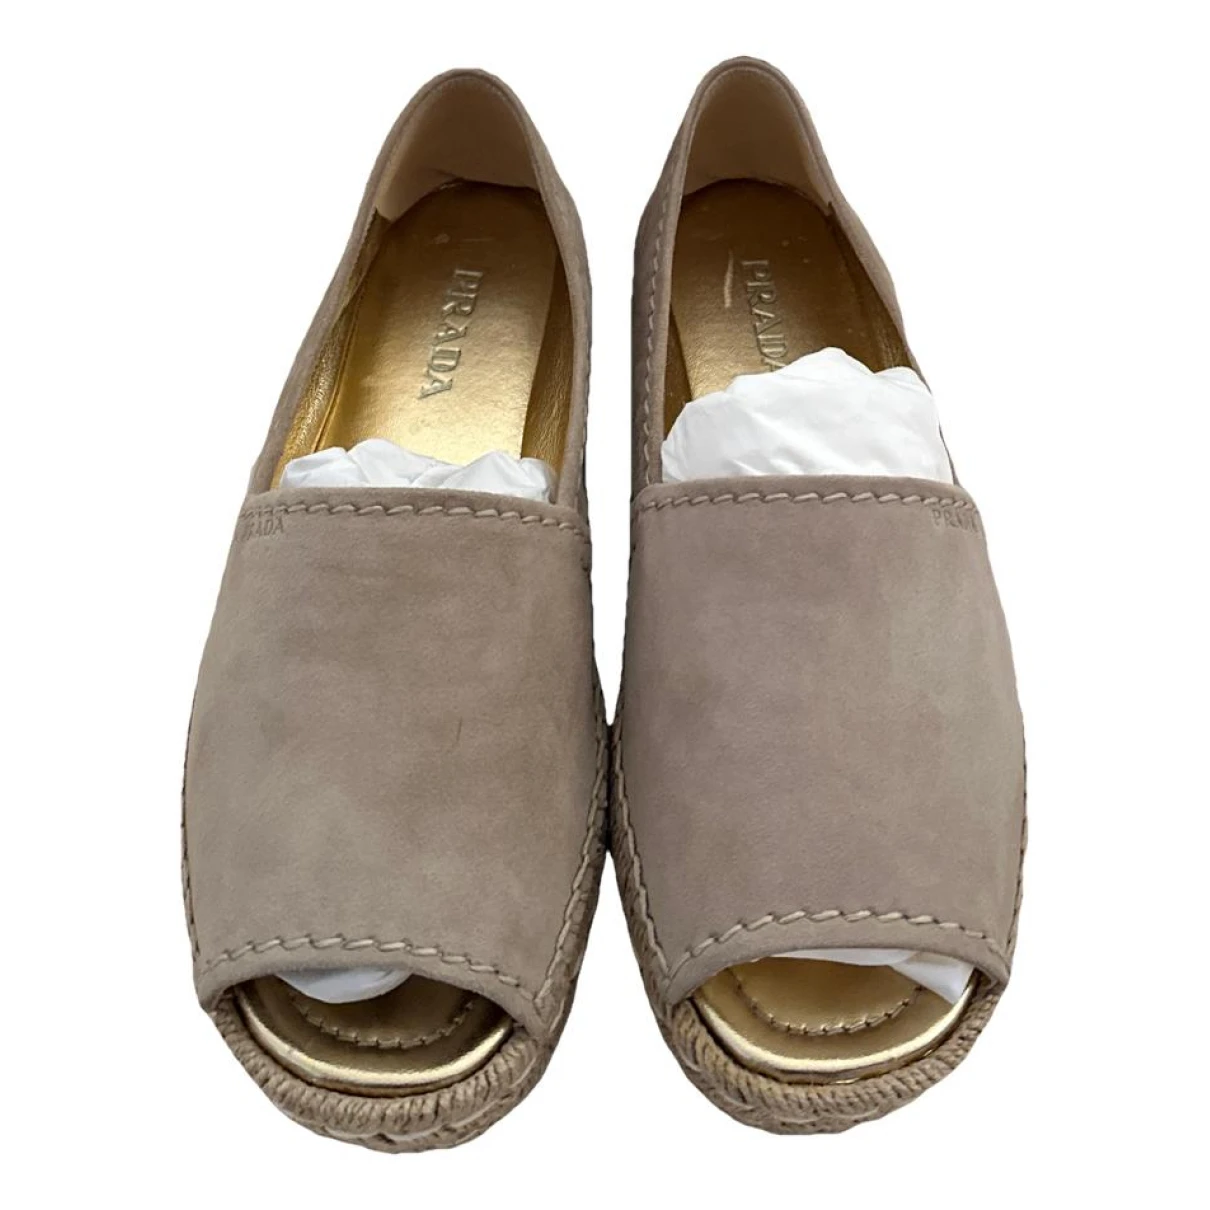 shoes Prada espadrilles for Female Suede 37.5 EU. Used condition